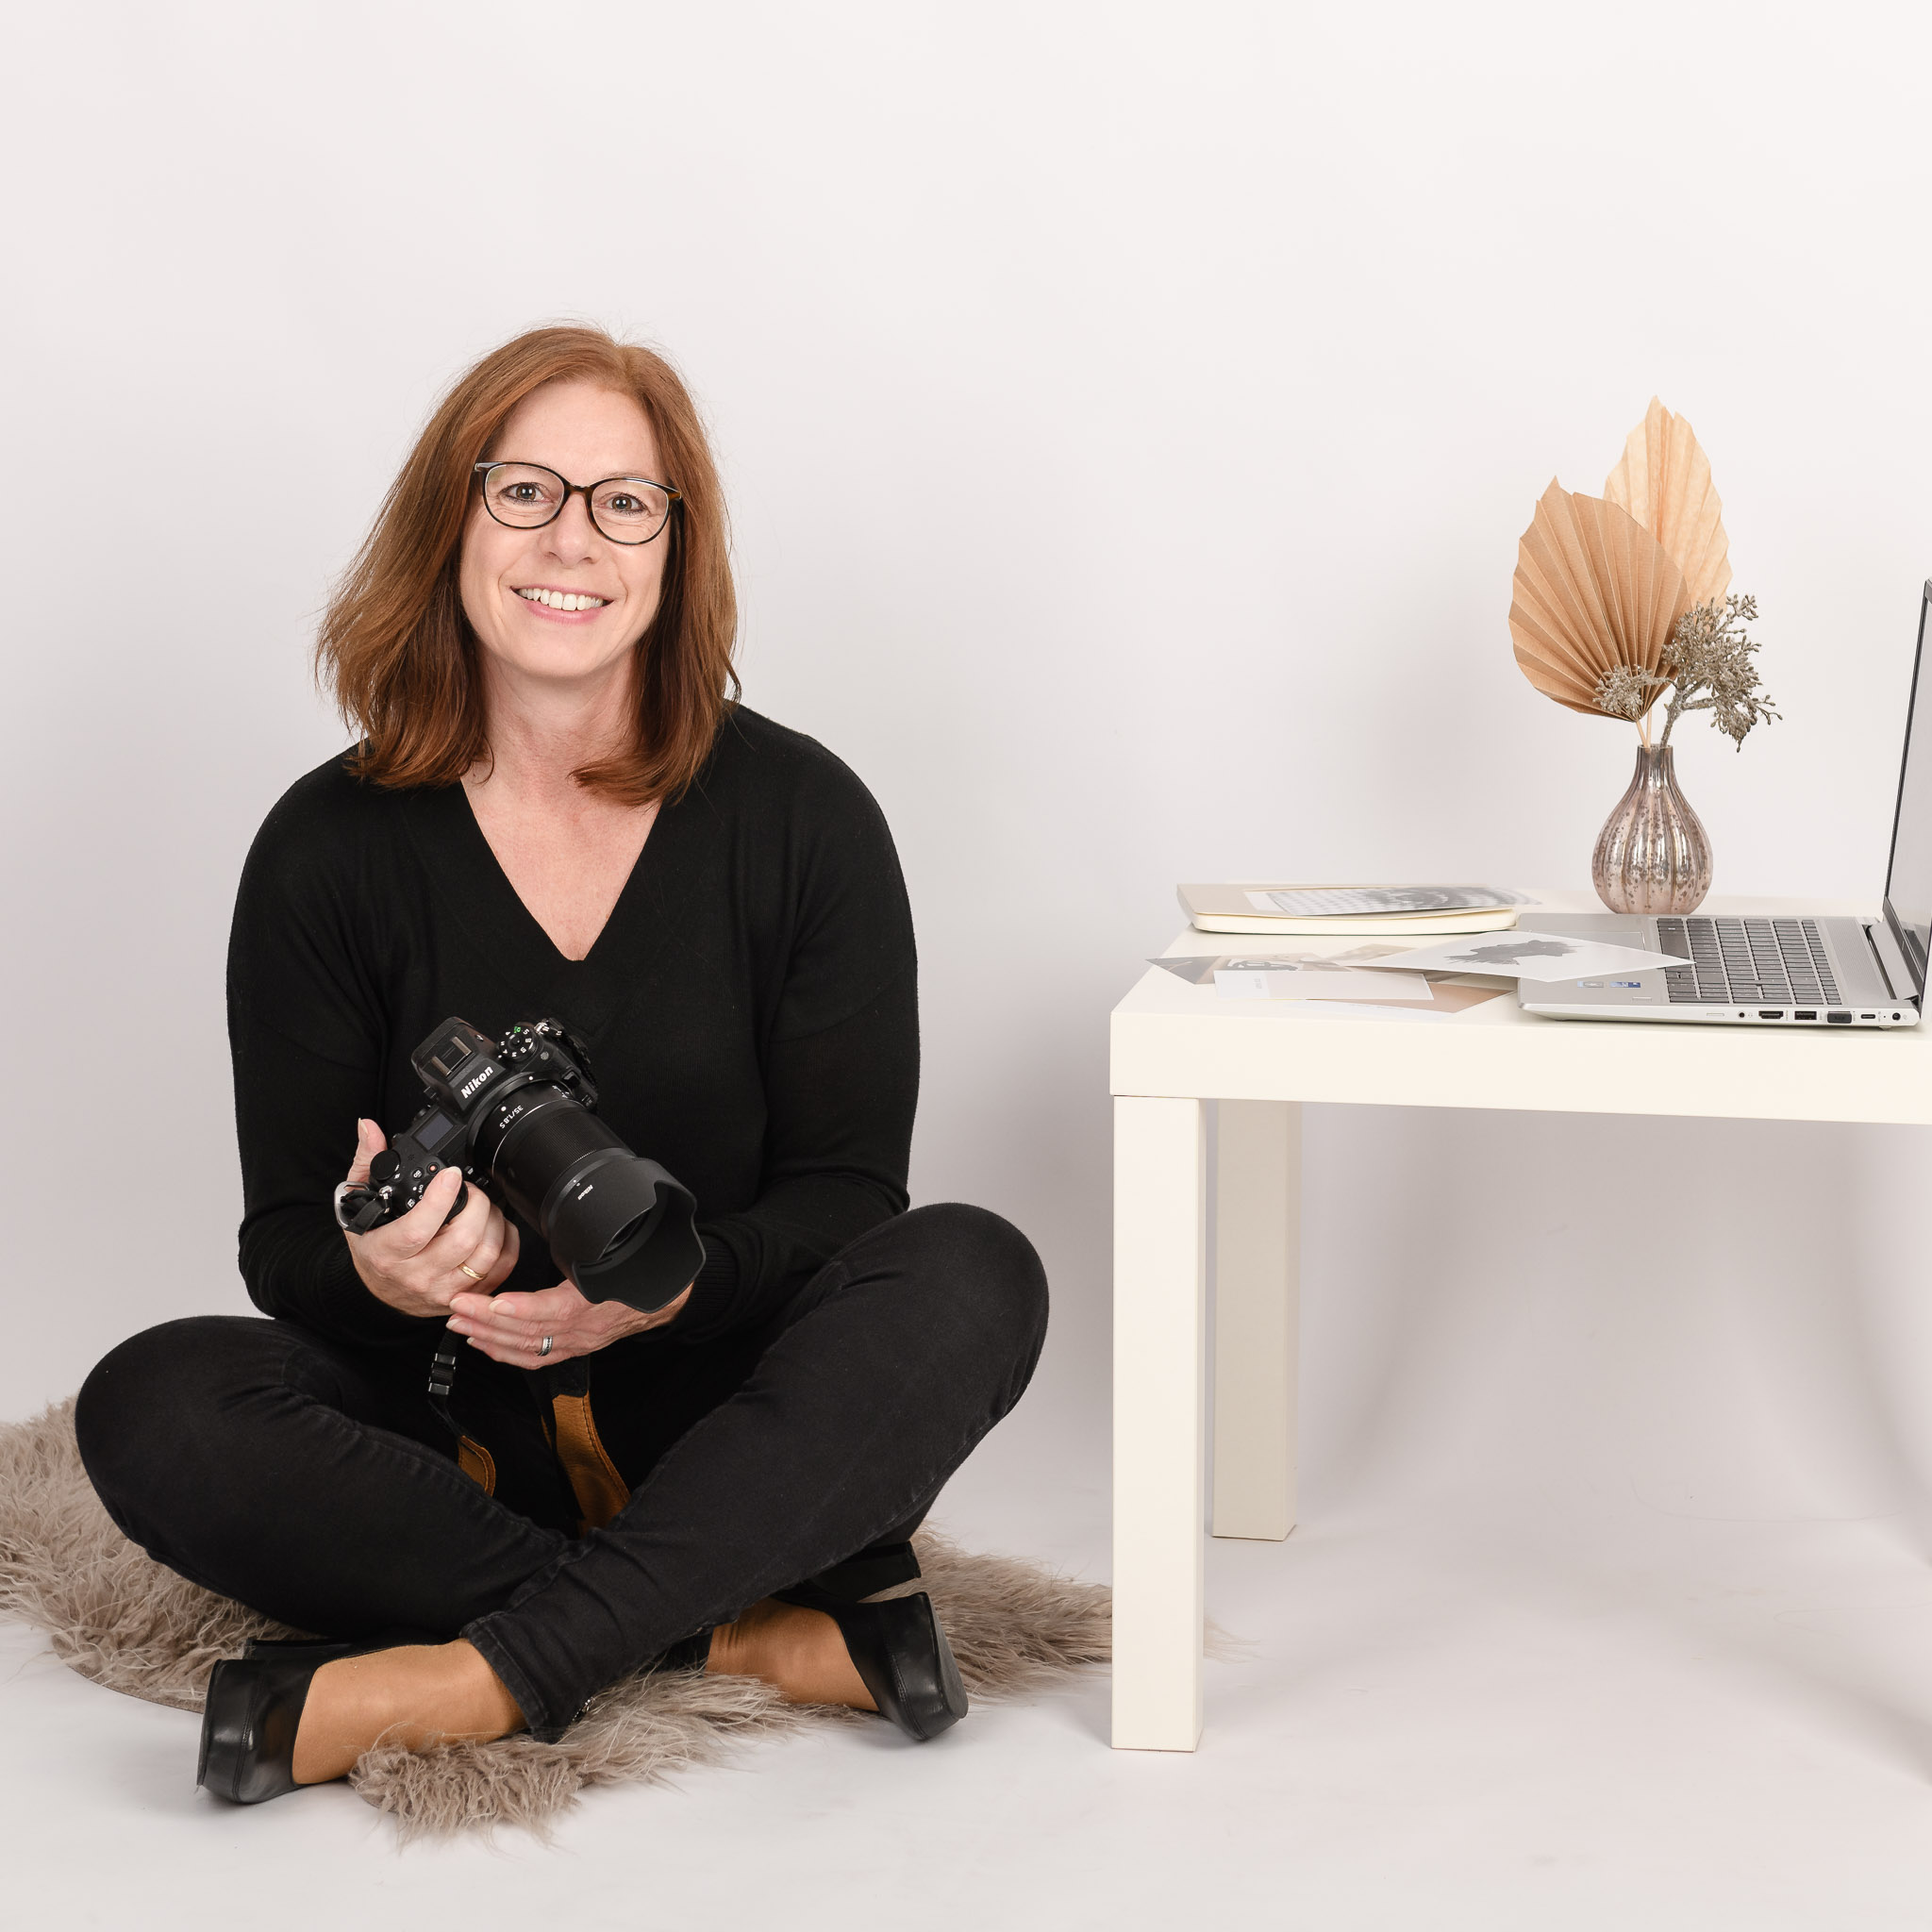 Fotografin-Ricarda Mayer sitzt im Schneidersitz auf einem Fell mit Kamera in der Hand